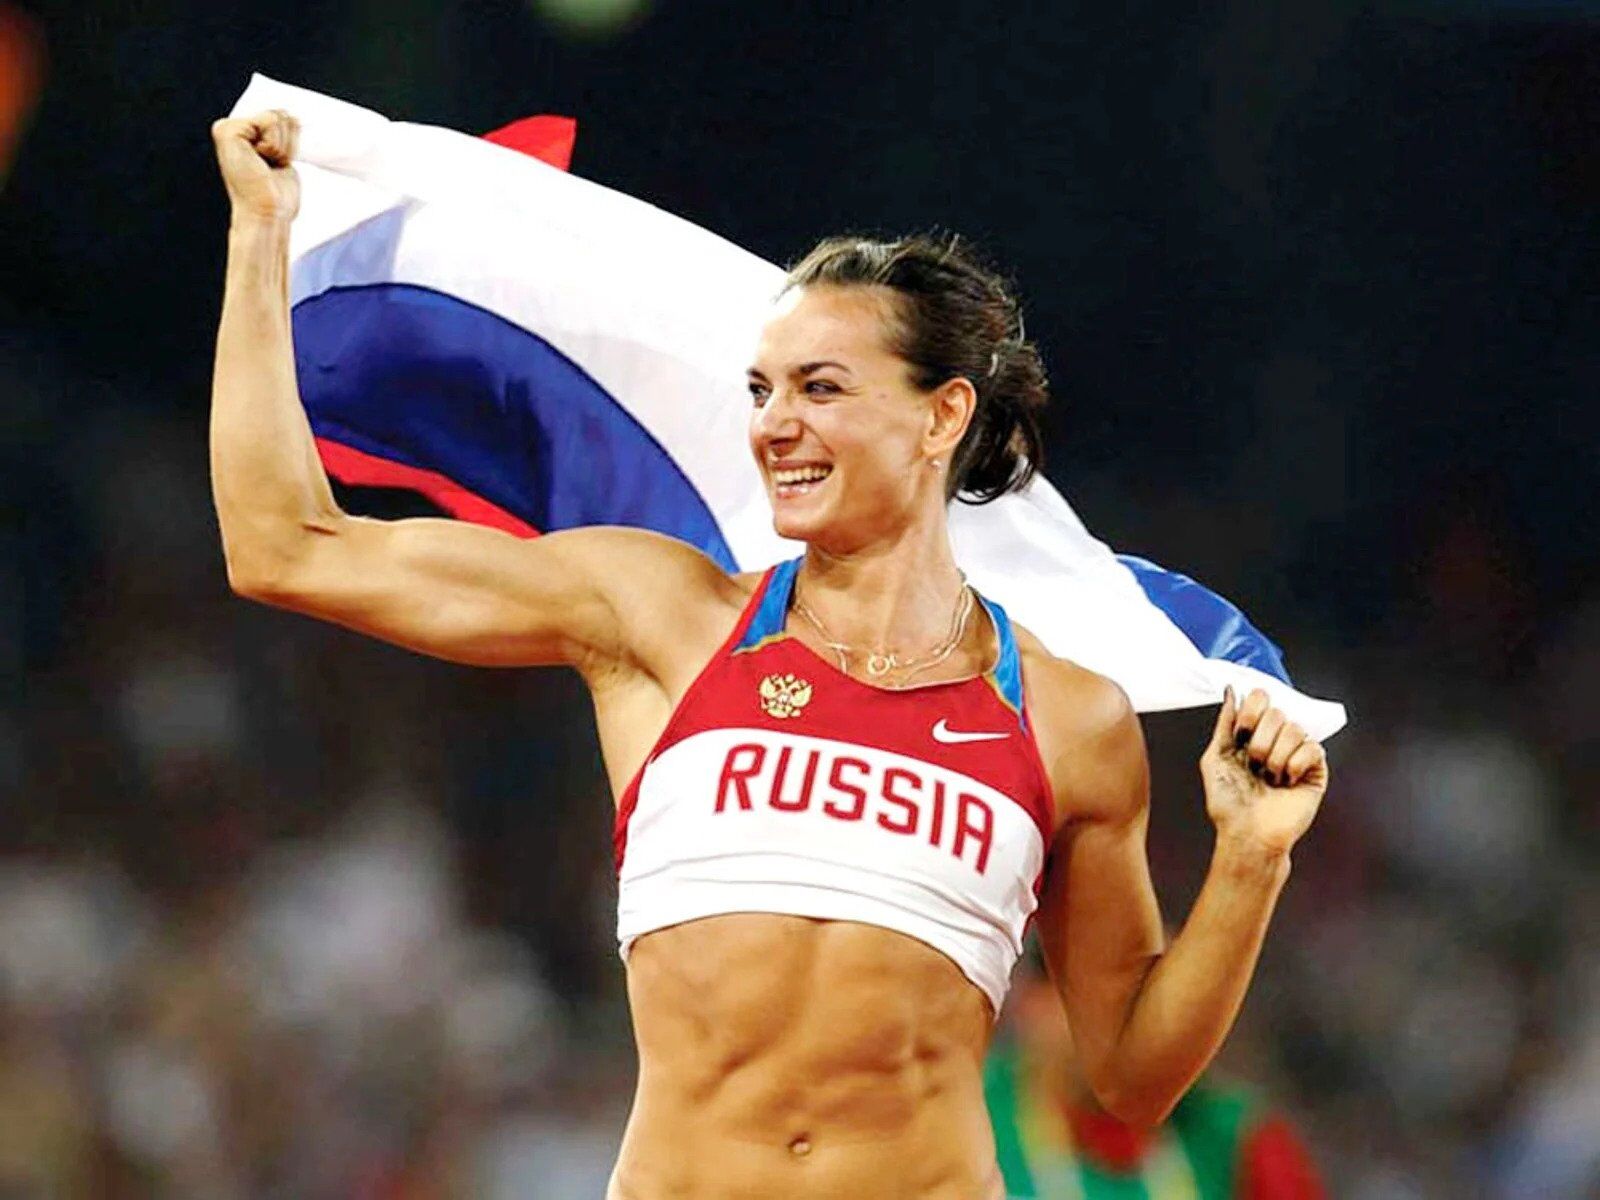 "Завдала шкоди": легендарній спортсменці погрожують кримінальною справою в Росії